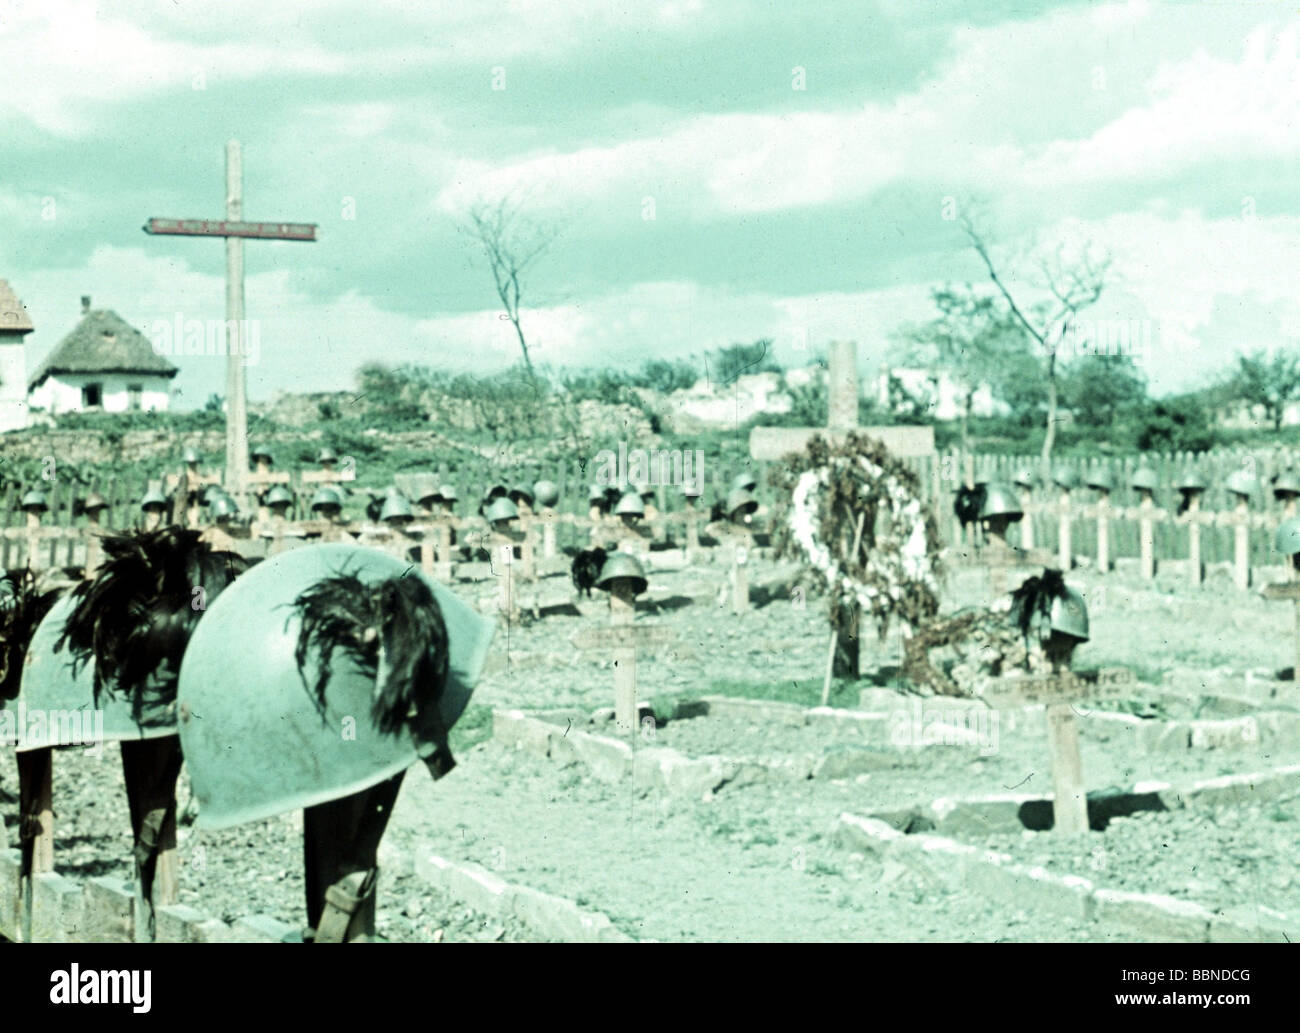 Veranstaltungen, Zweiter Weltkrieg/zweiter Weltkrieg, Russland 1941, Donets-Becken, italienischer Friedhof, Stahlhelme von Bersaglieri-Truppen (Scharfschützen), Stockfoto